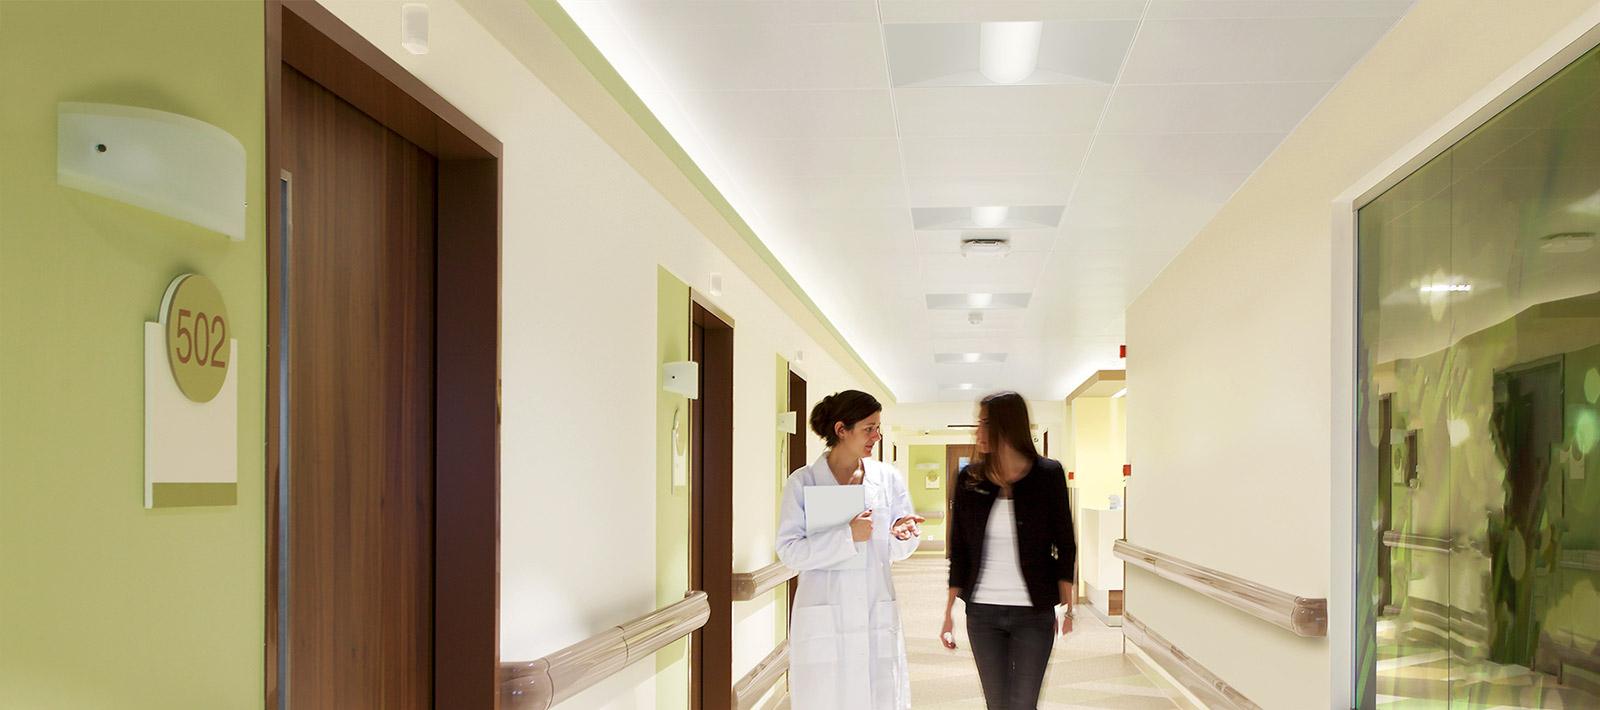 Hospital Corridor Covert Lite